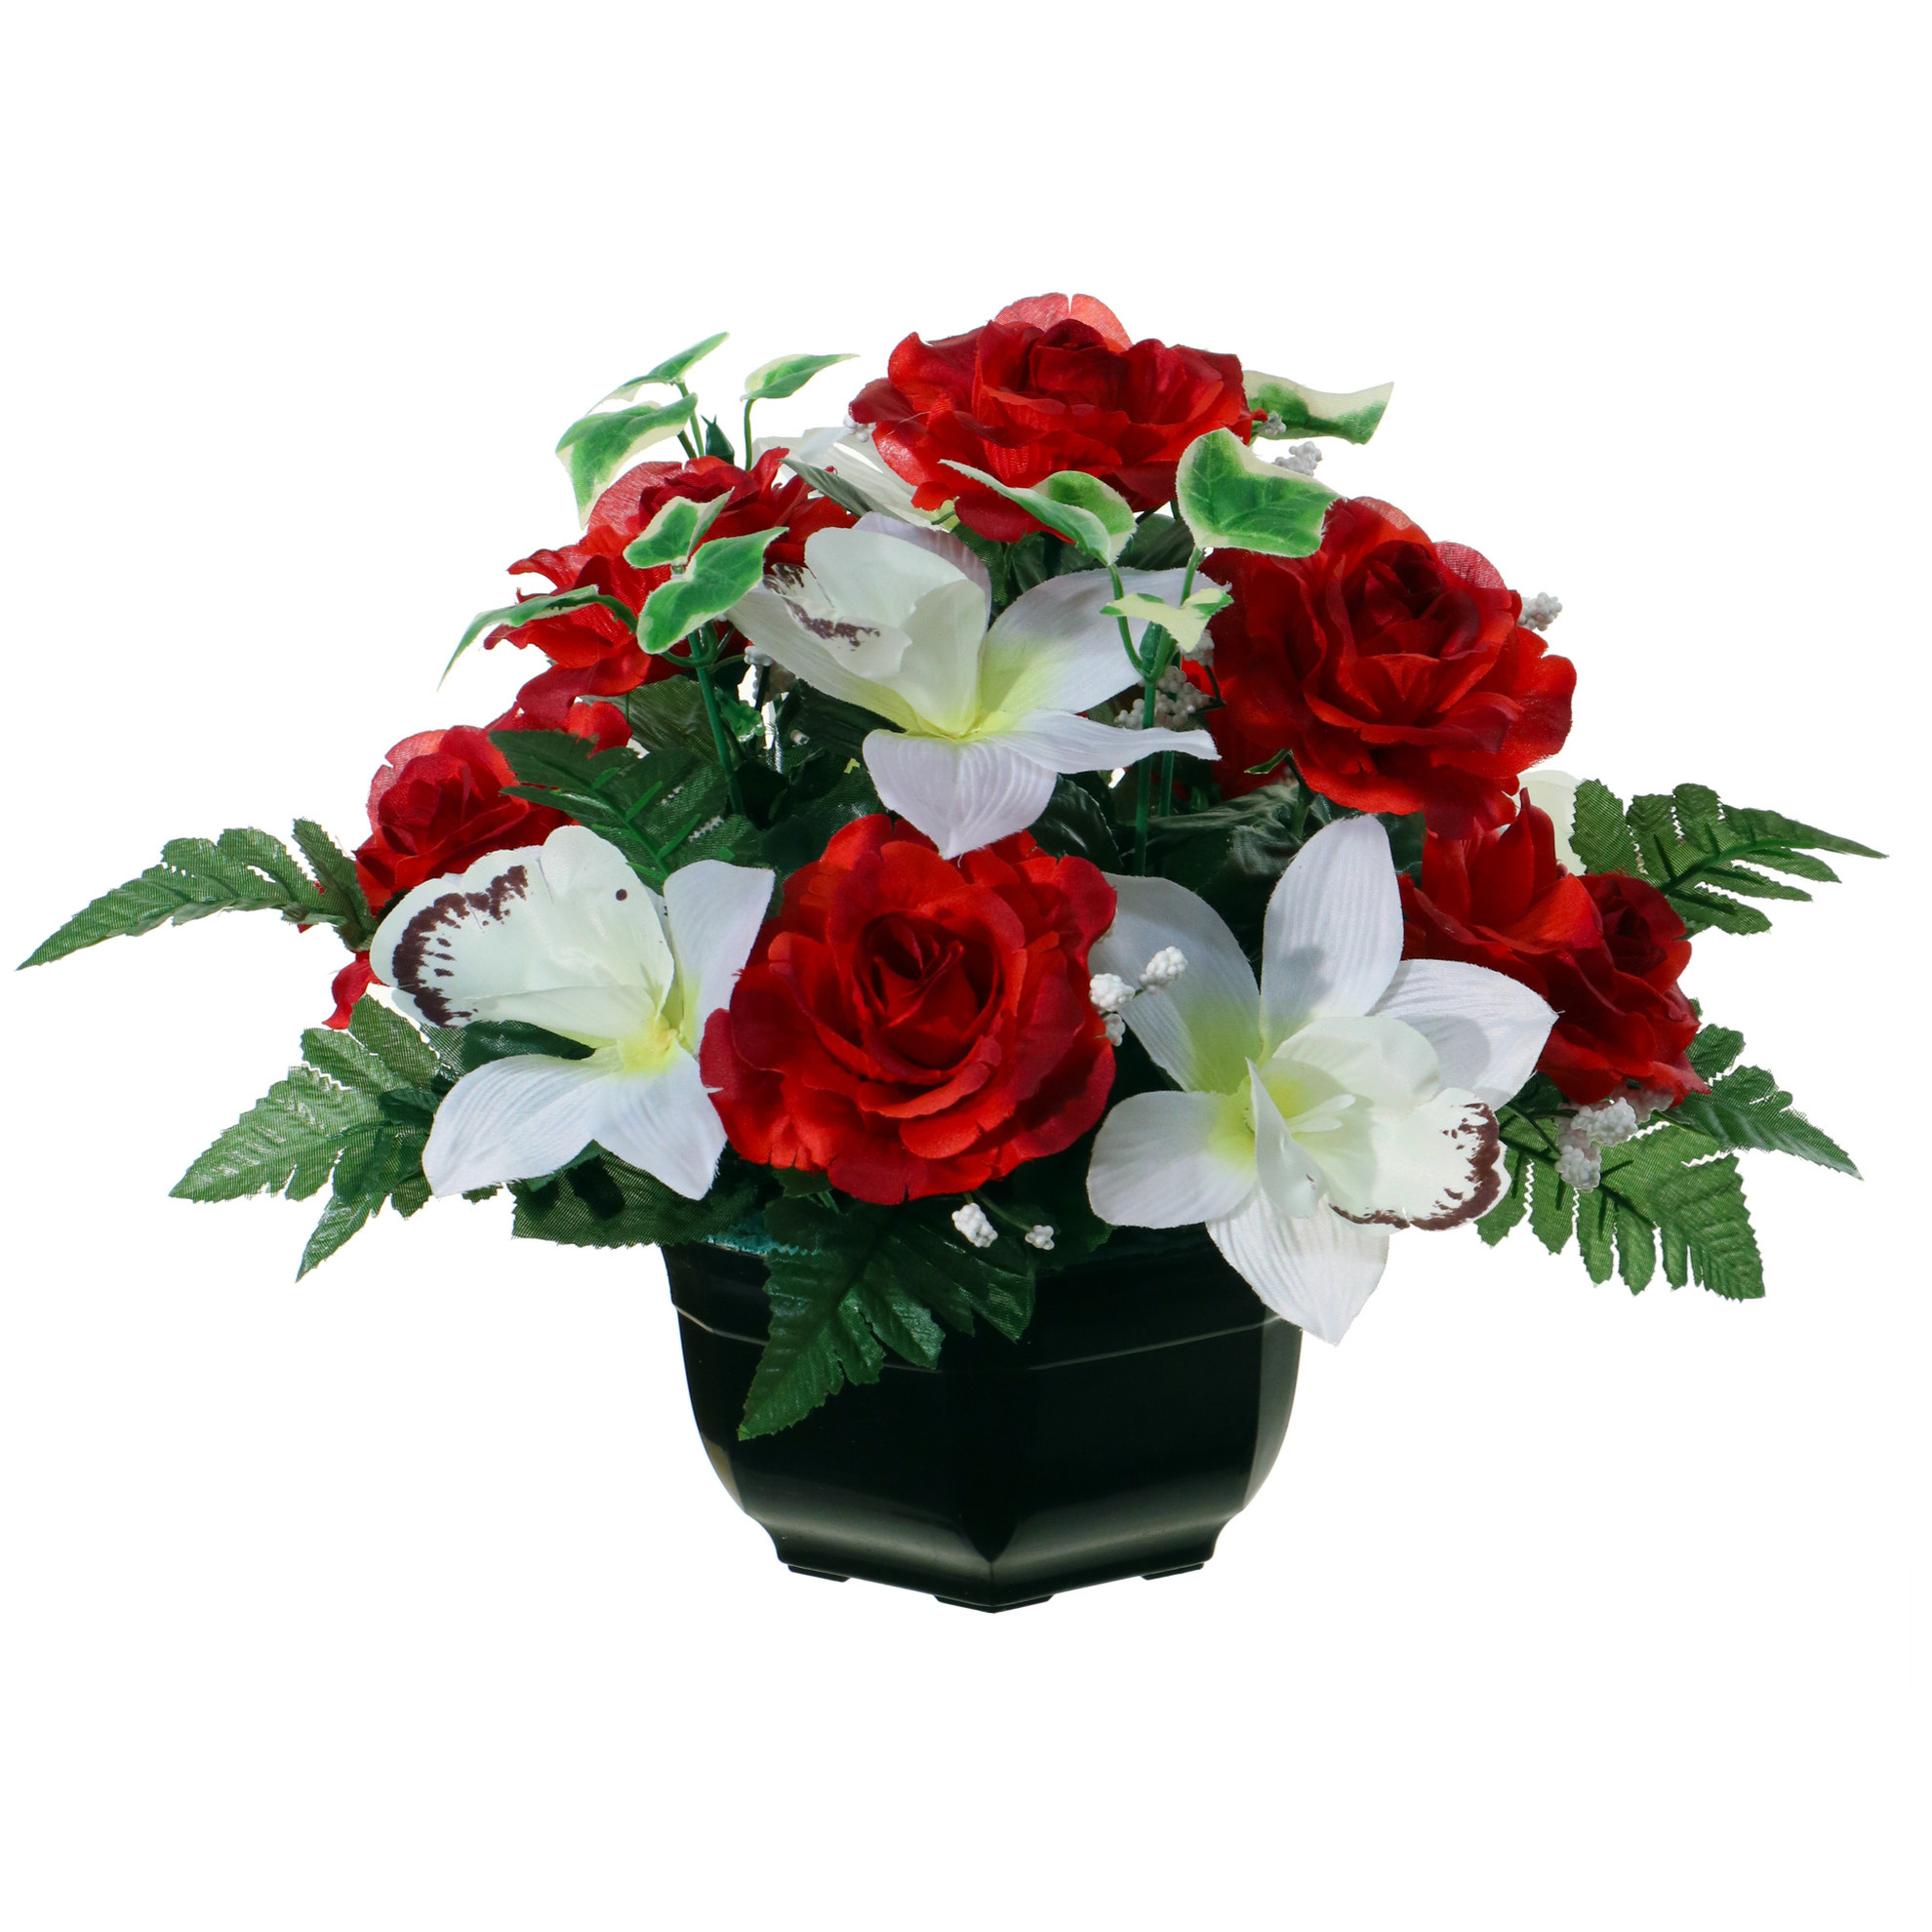 Kunstbloemen plantje orchidee/rozen in pot - kleuren rood/wit - 25 cm - Bloemstuk - met bladgroen